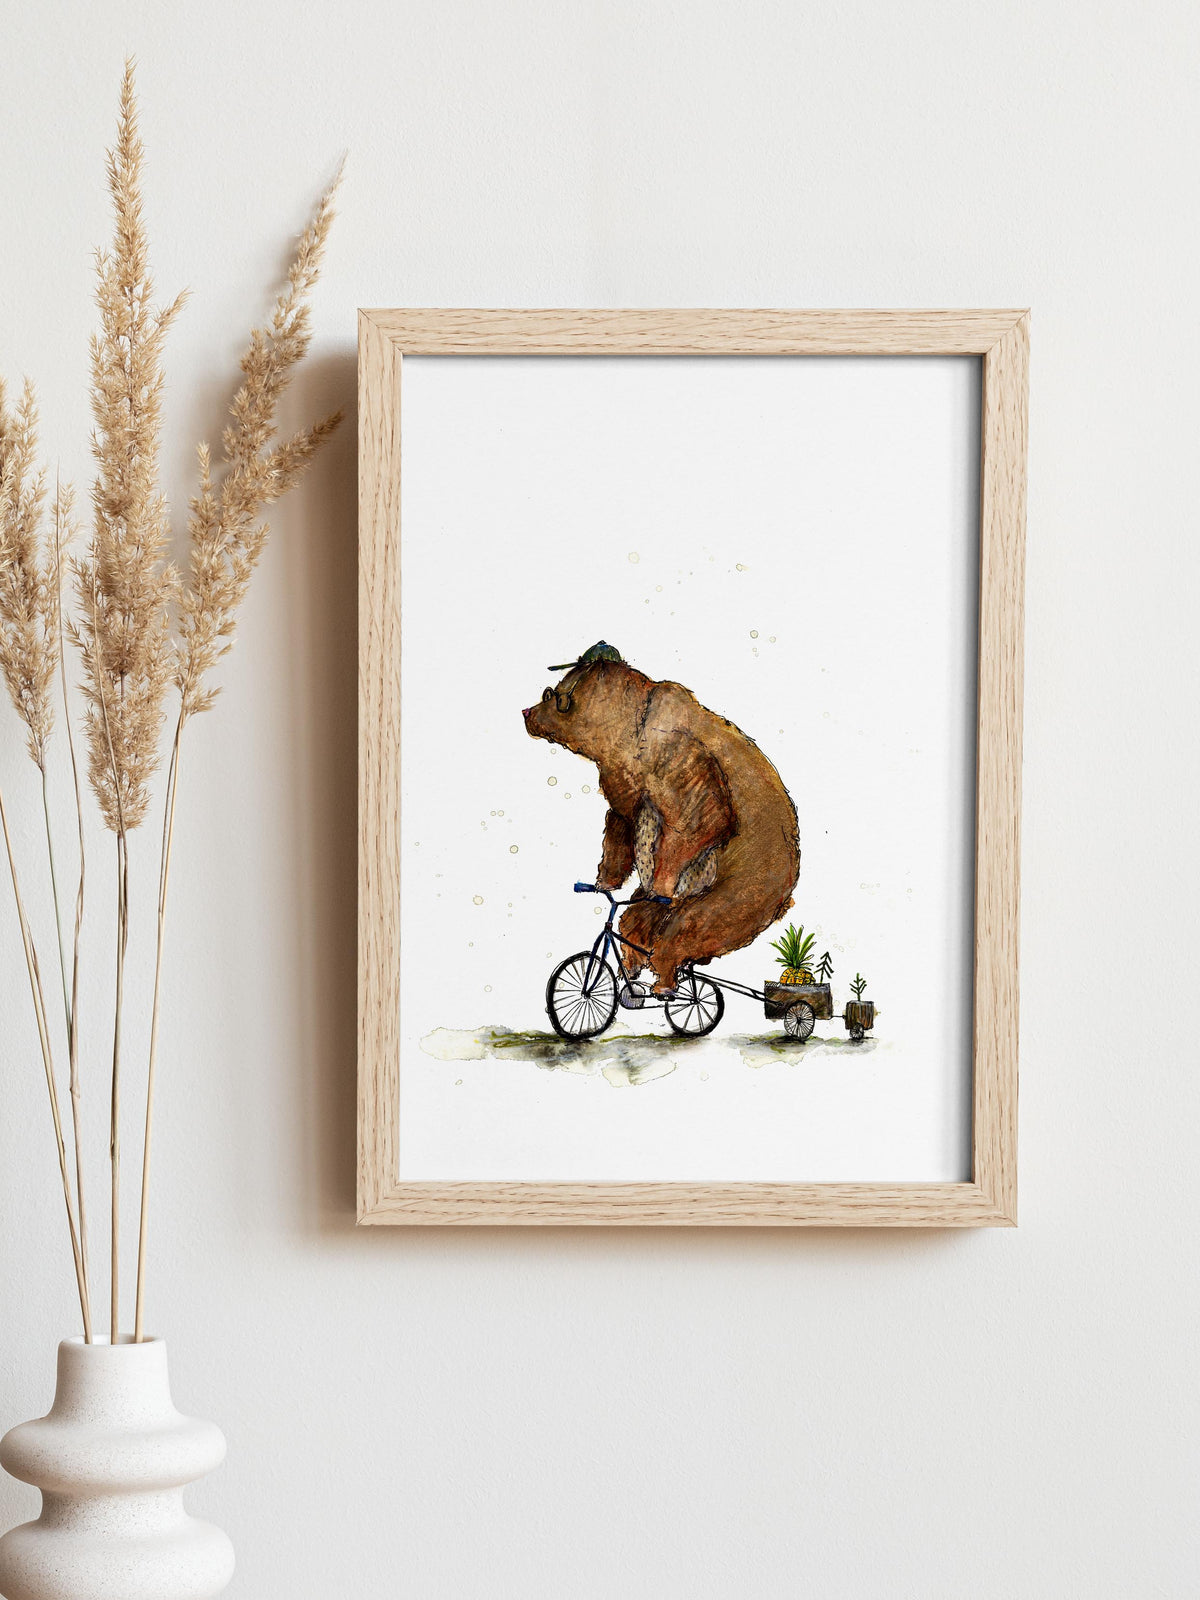 Bär auf Rad, illustration von Ramona Zirk halfbird. Aufgehängt in einem Holzbilderrahmen in hell